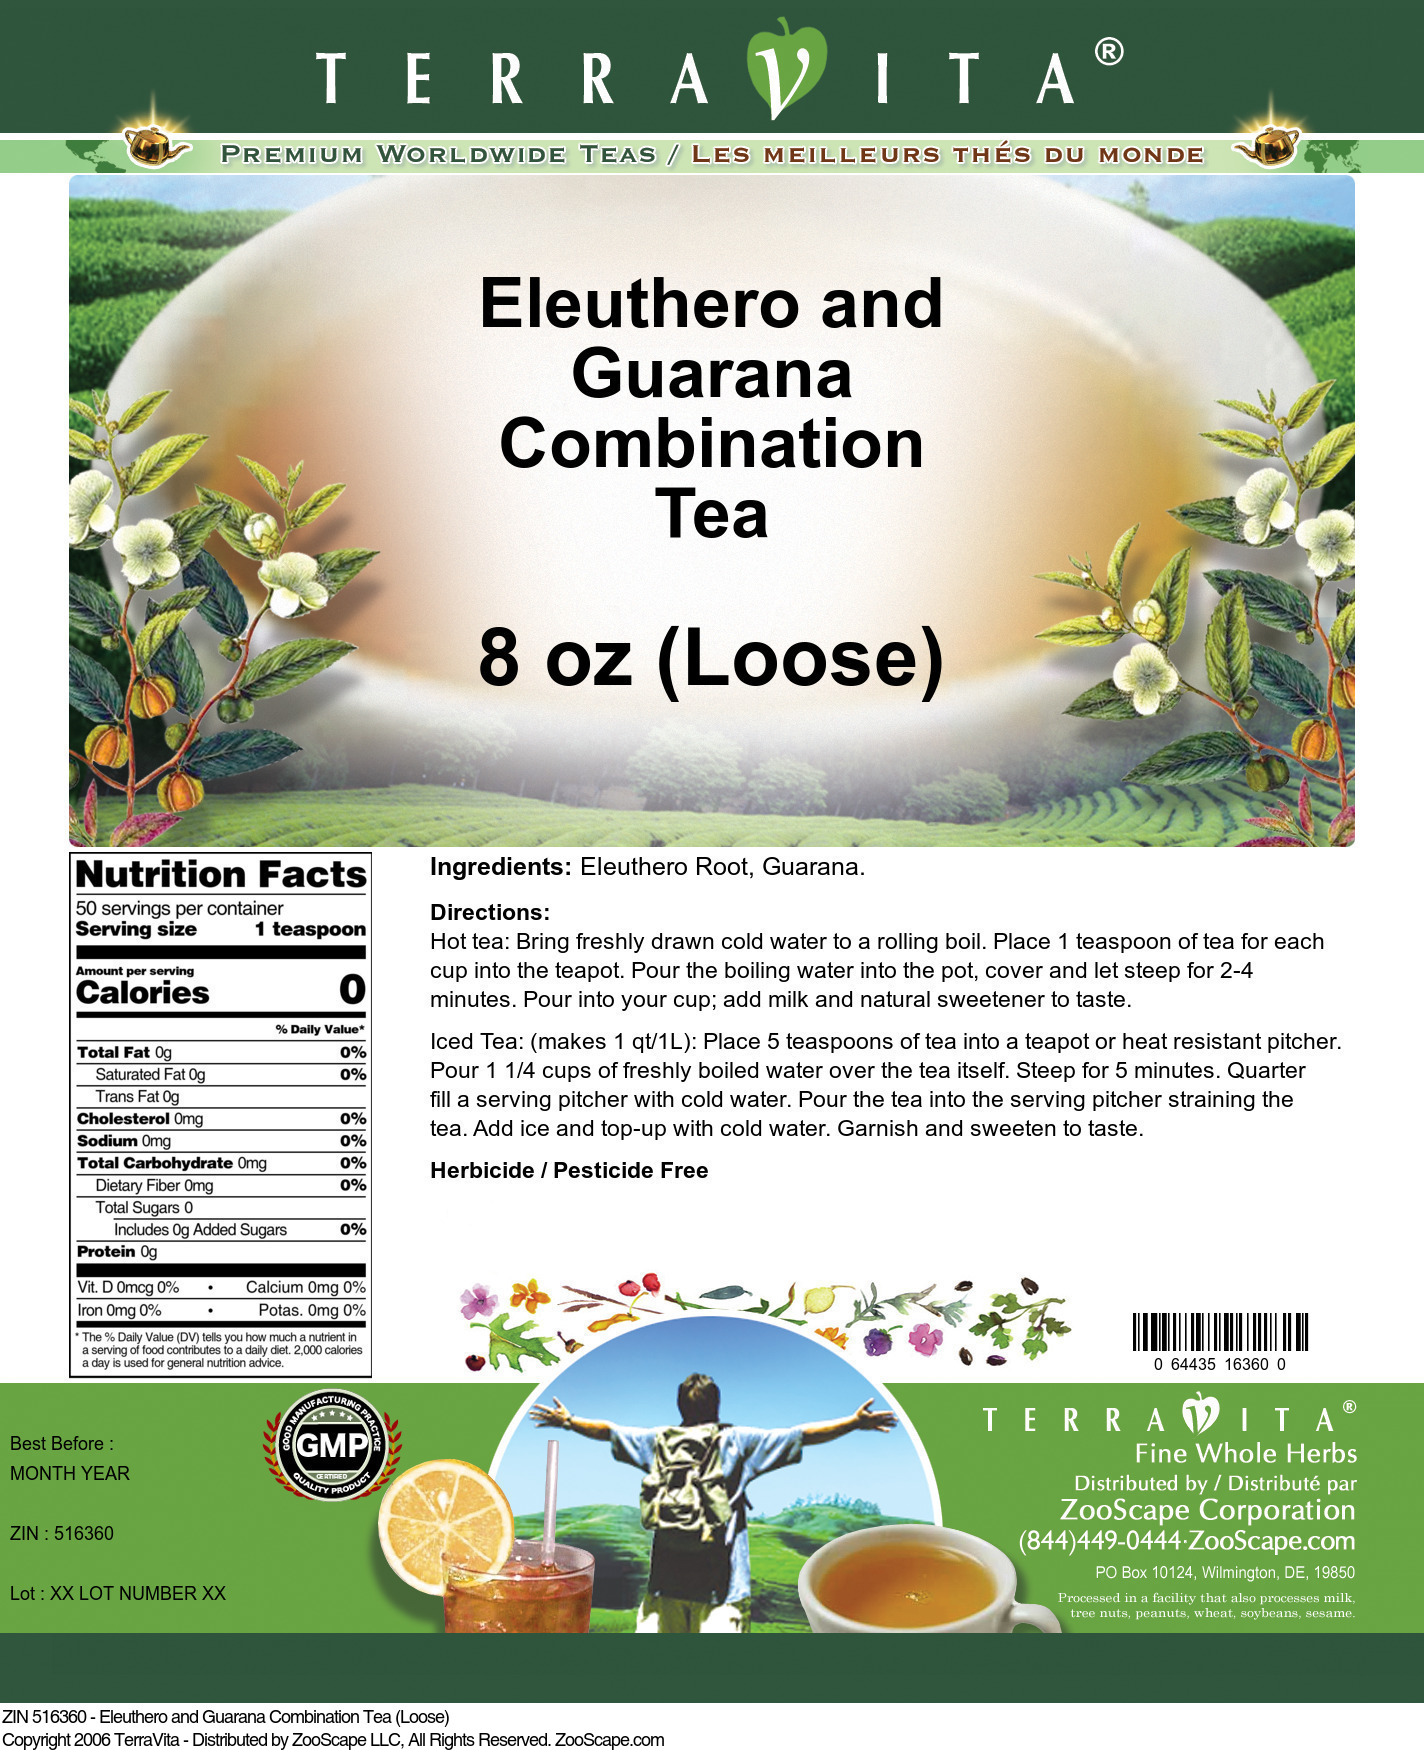 Eleuthero and Guarana Combination Tea (Loose) - Label